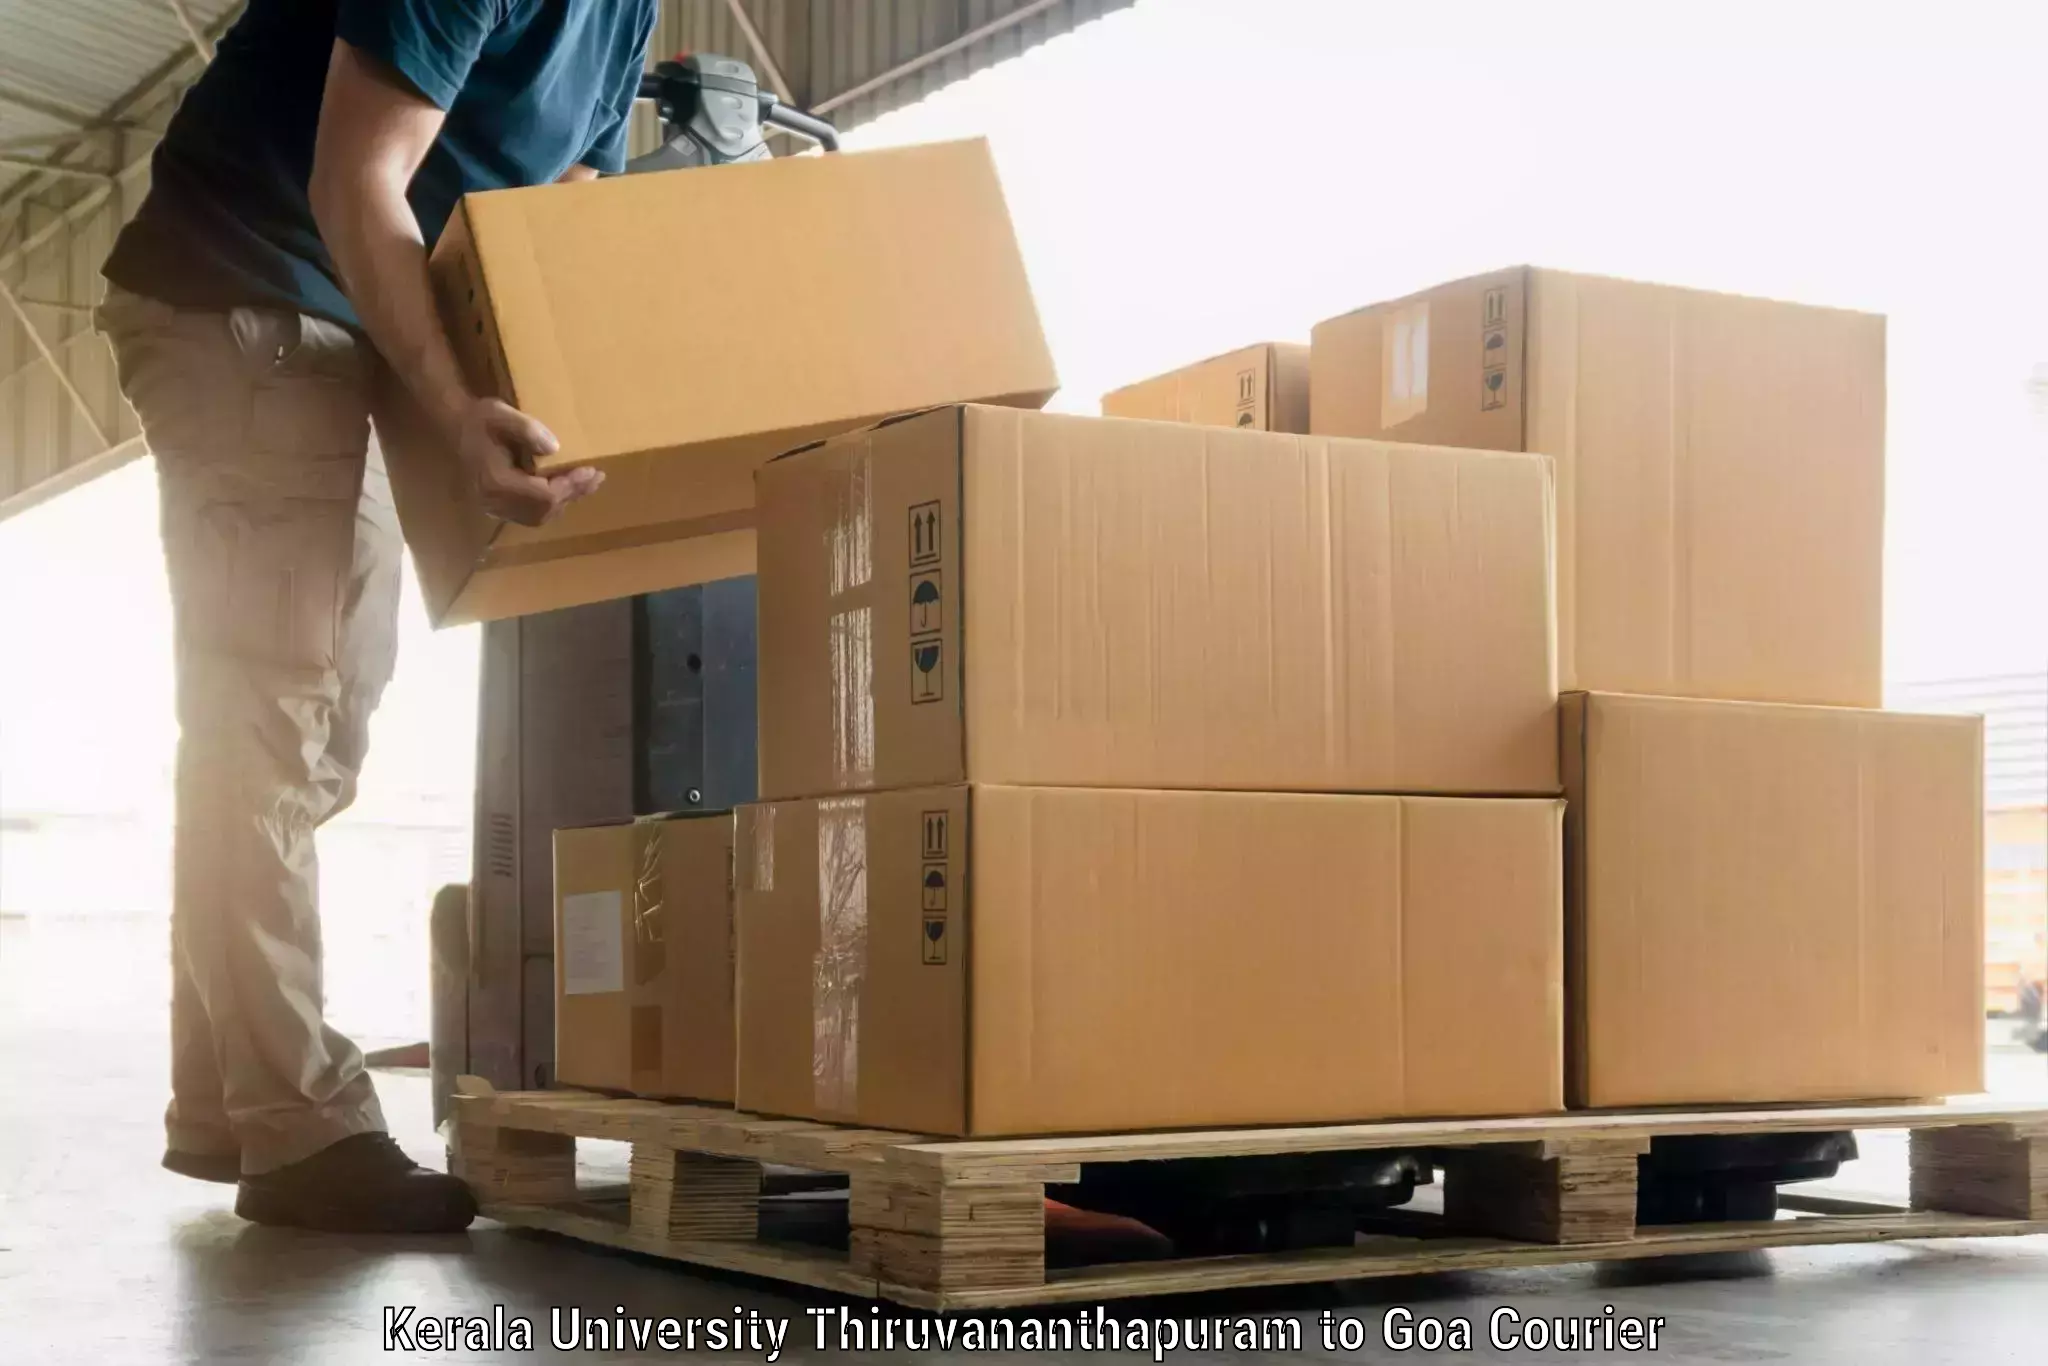 Baggage transport scheduler Kerala University Thiruvananthapuram to Vasco da Gama